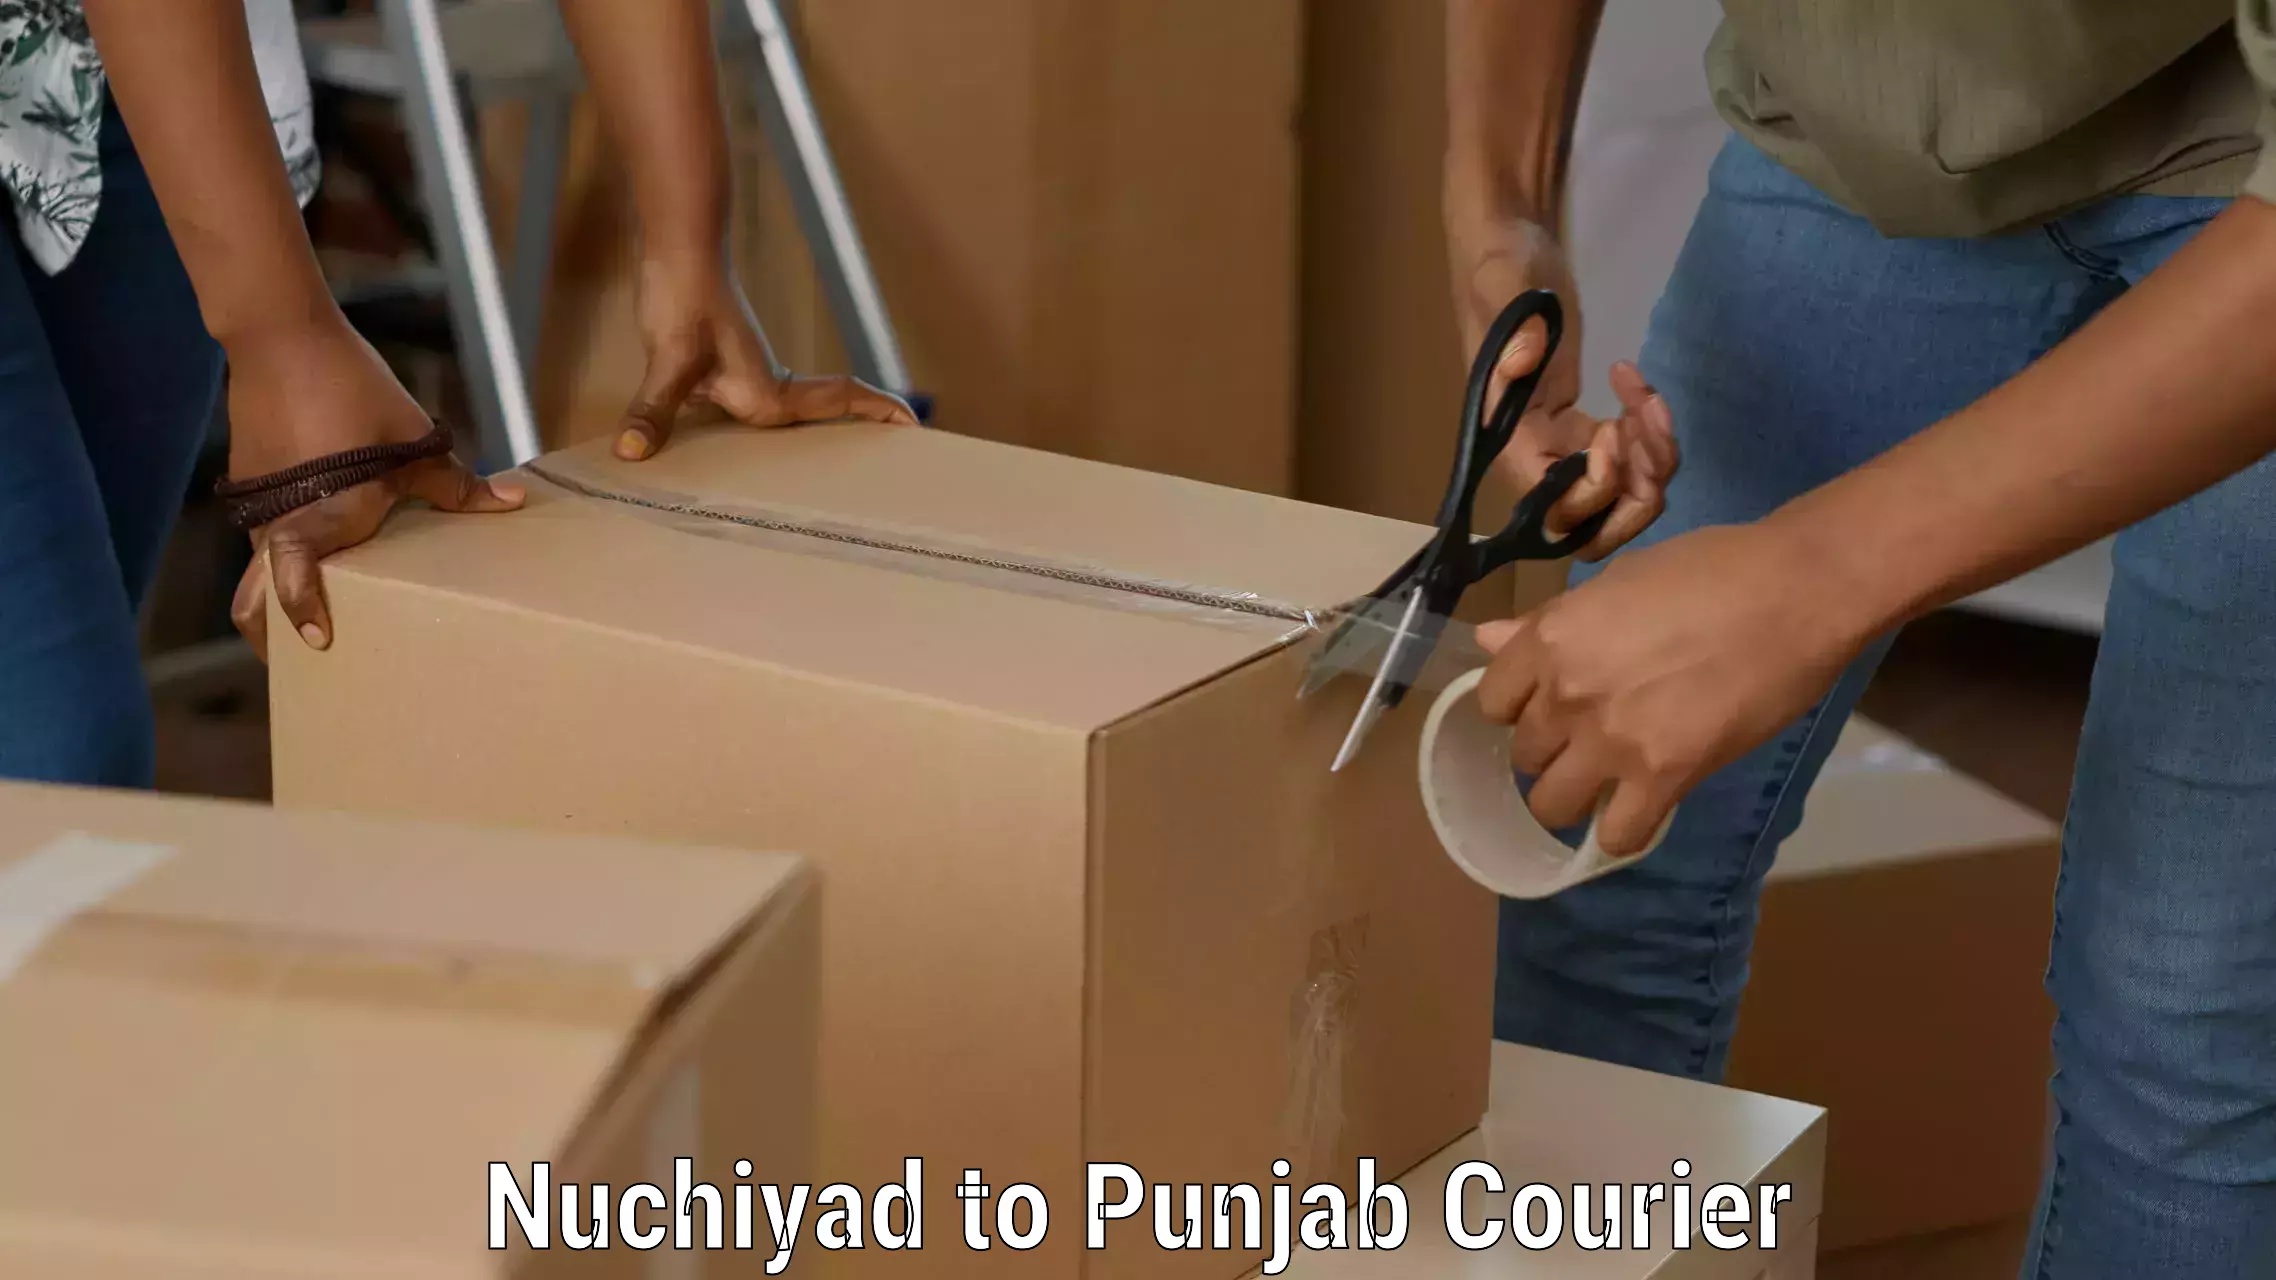 High-efficiency logistics Nuchiyad to Punjab